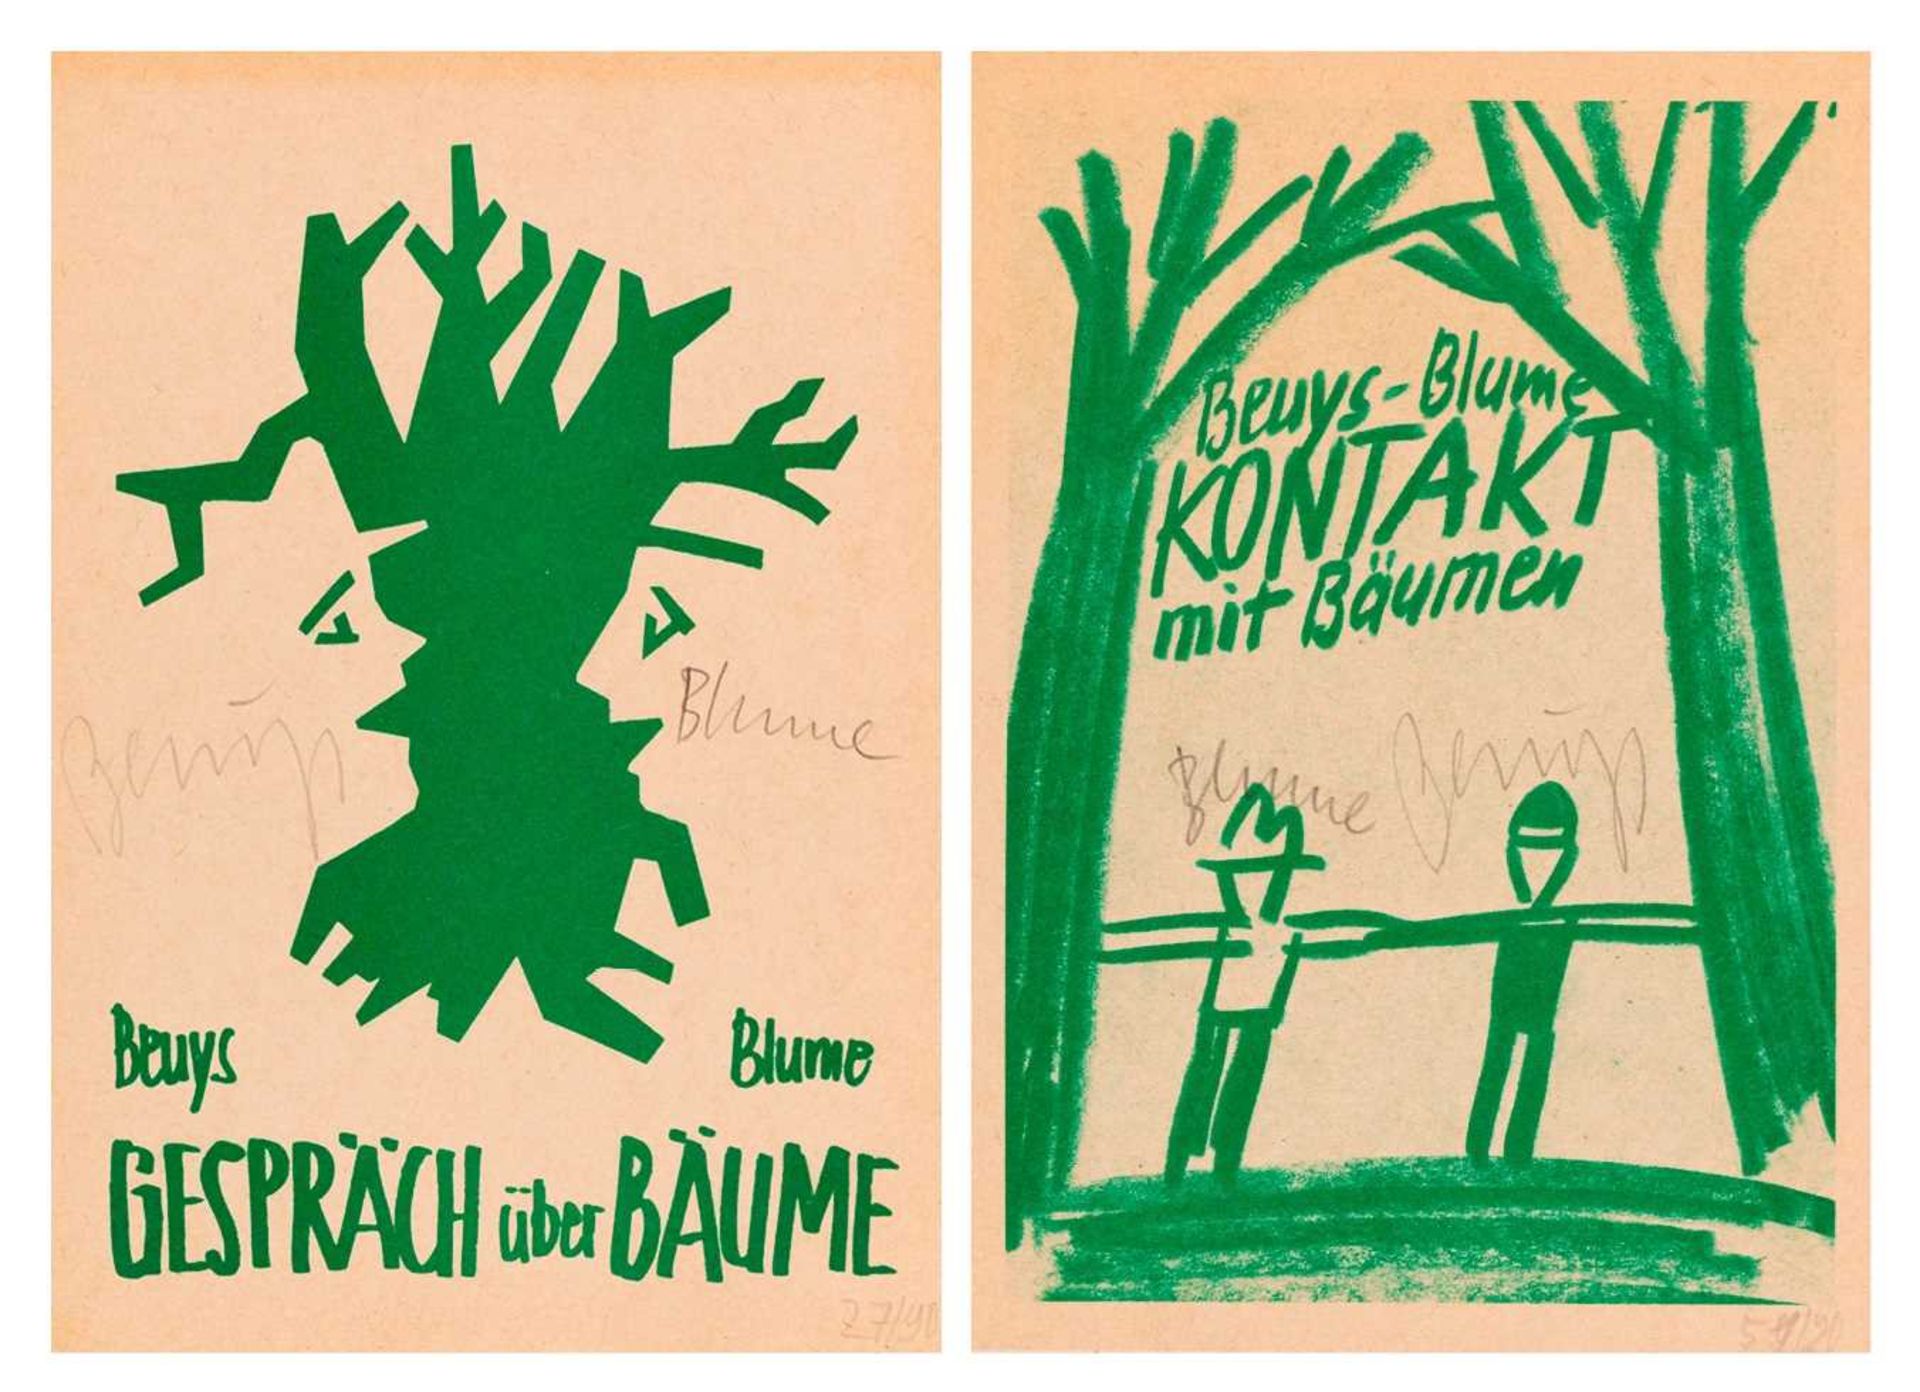 Joseph Beuys (1921 Krefeld - Düsseldorf 1986) & Bernhard Blume (1937 Dortmund - Köln 2011)